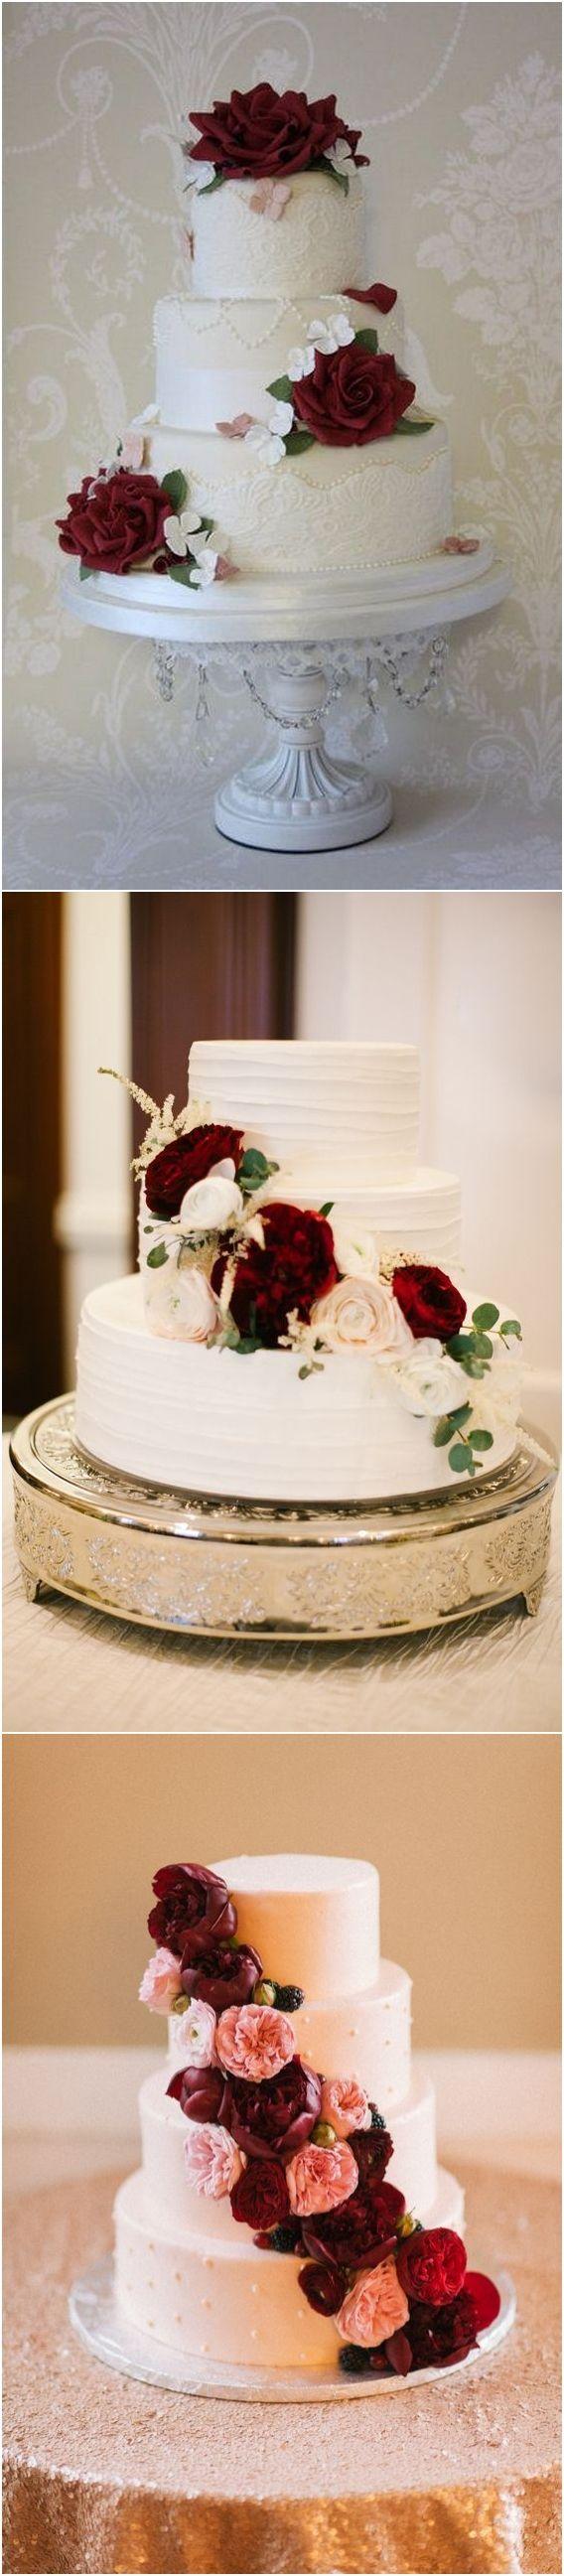 زفاف - Top 20 Burgundy Wedding Cakes You’ll Love